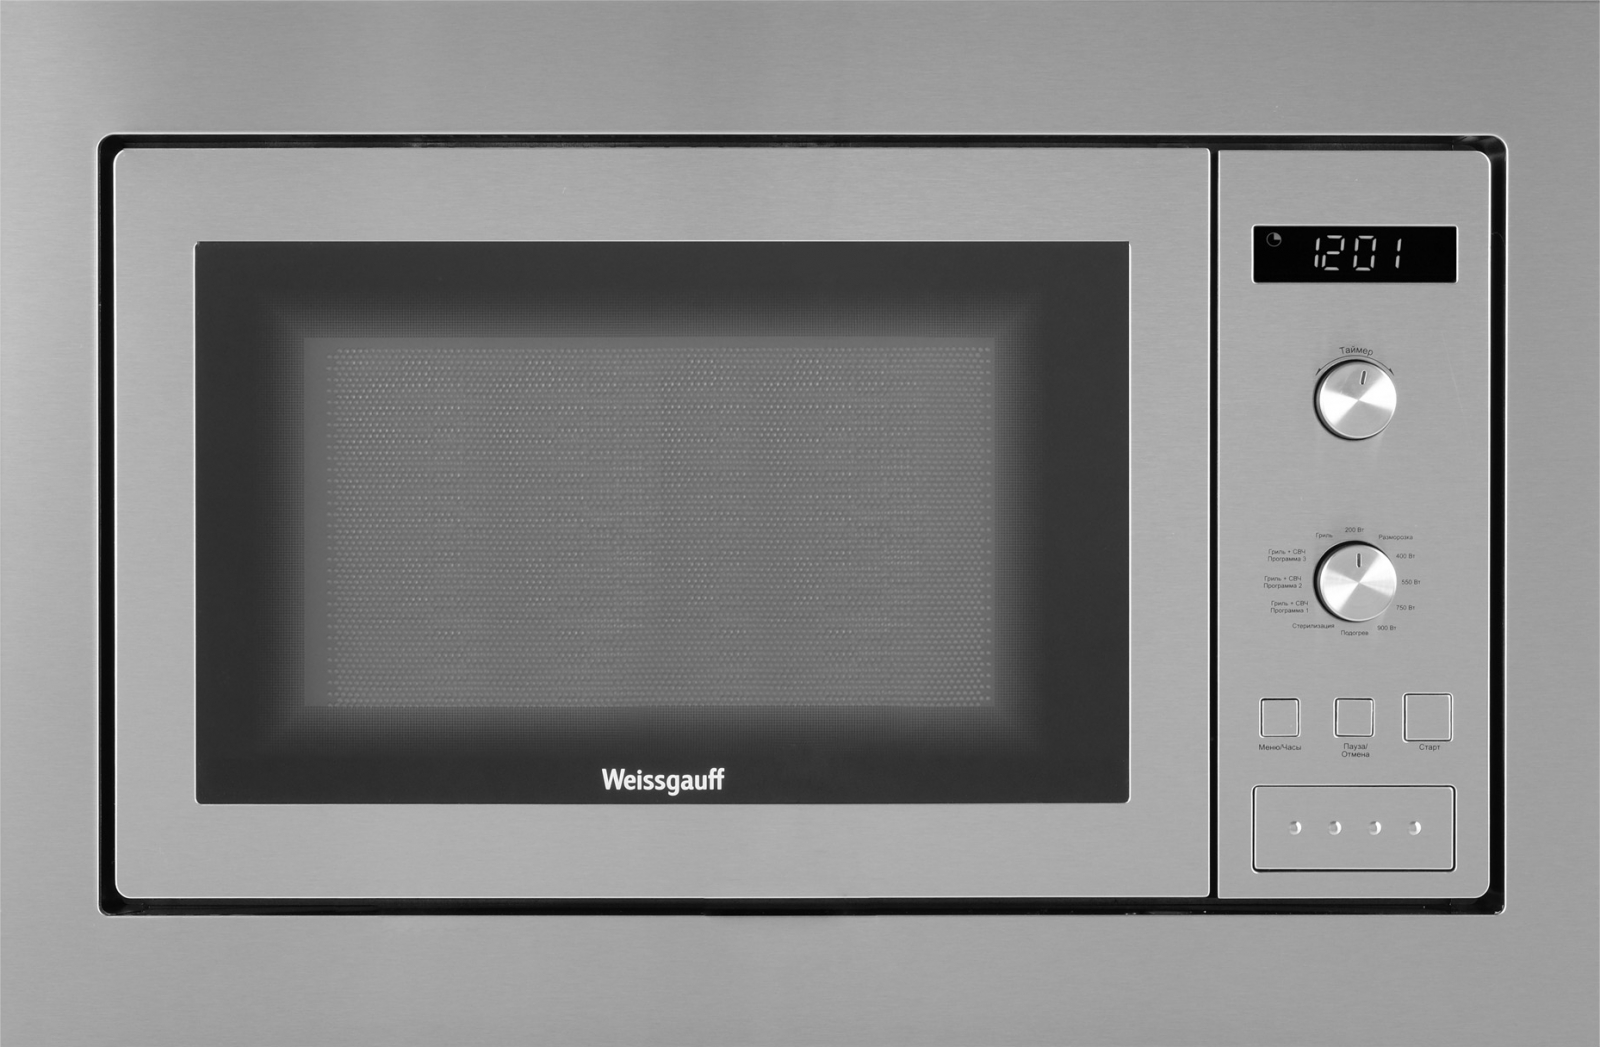 Встраиваемая микроволновая печь Weissgauff HMT-255 Silver встраиваемая микроволновая печь weissgauff hmt 206 compact черная